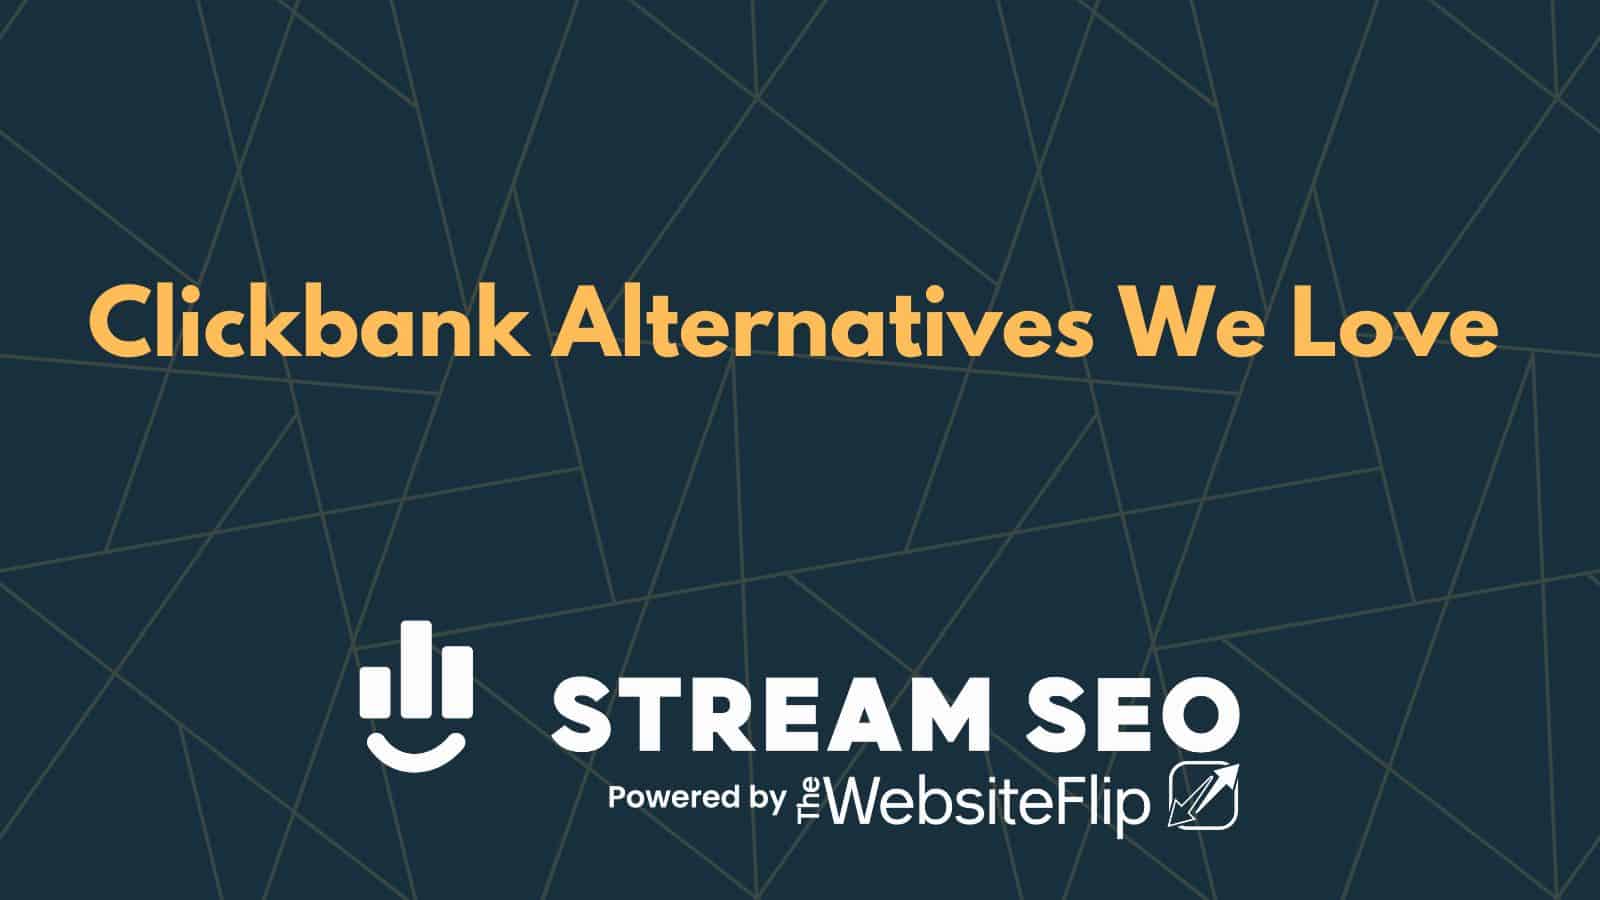 7 Clickbank Alternatives We Love